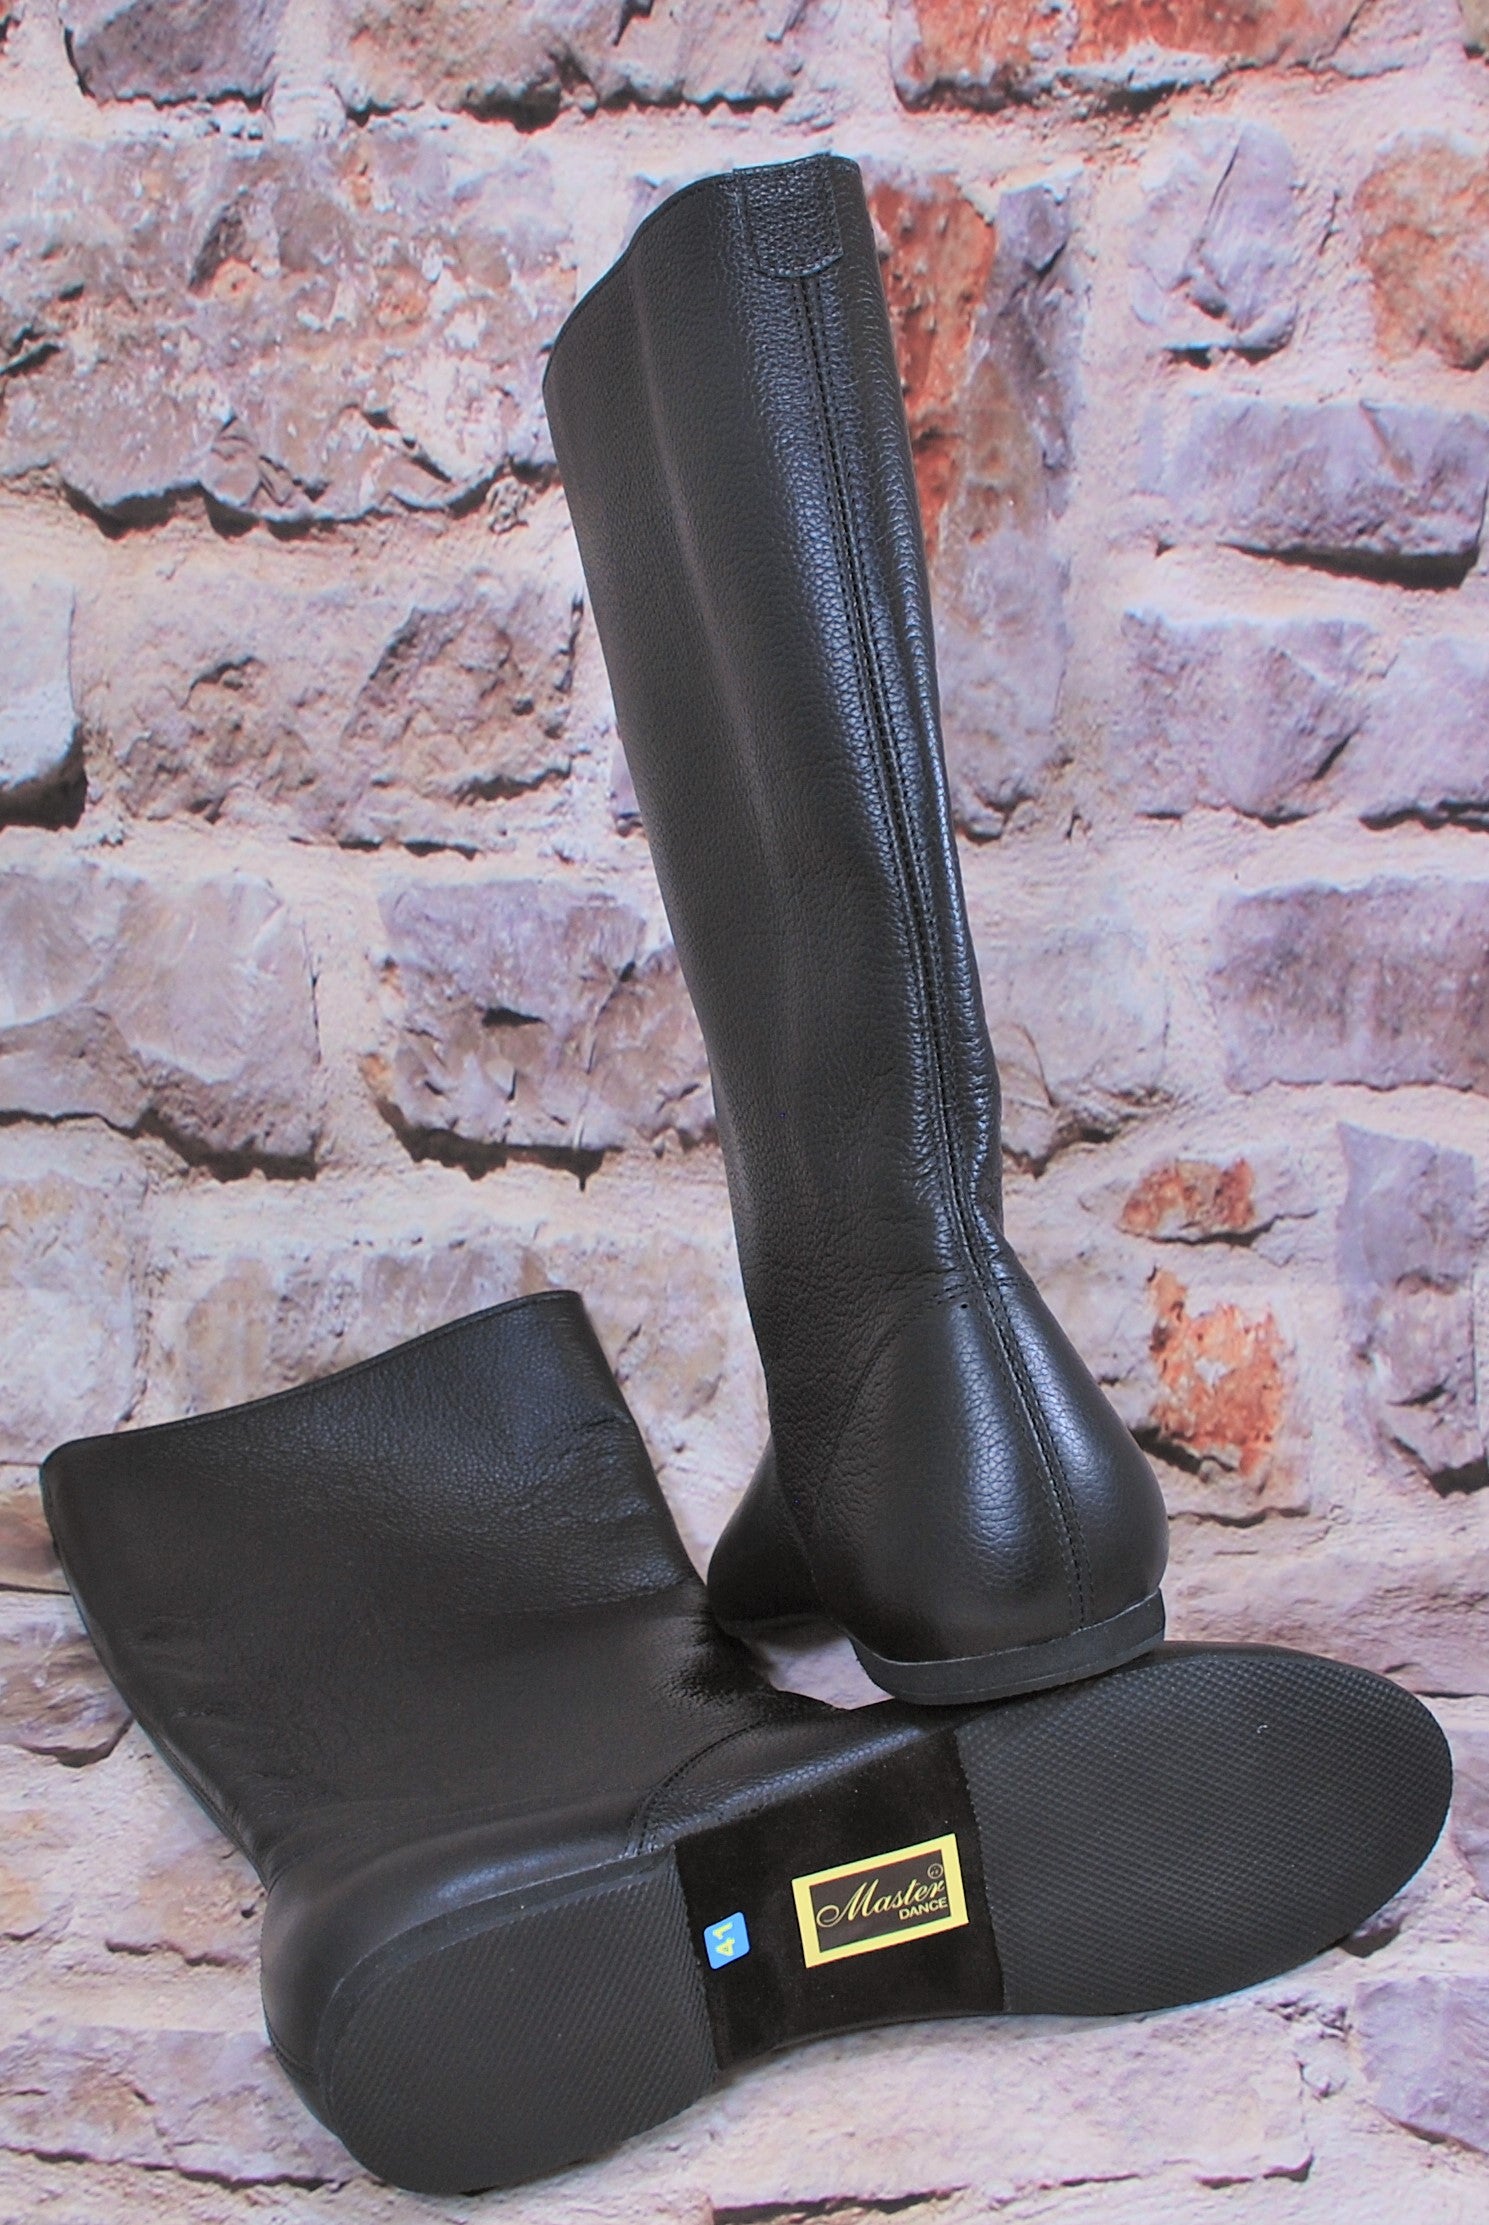 Ukrainian black dancing boots. Men's, boy's